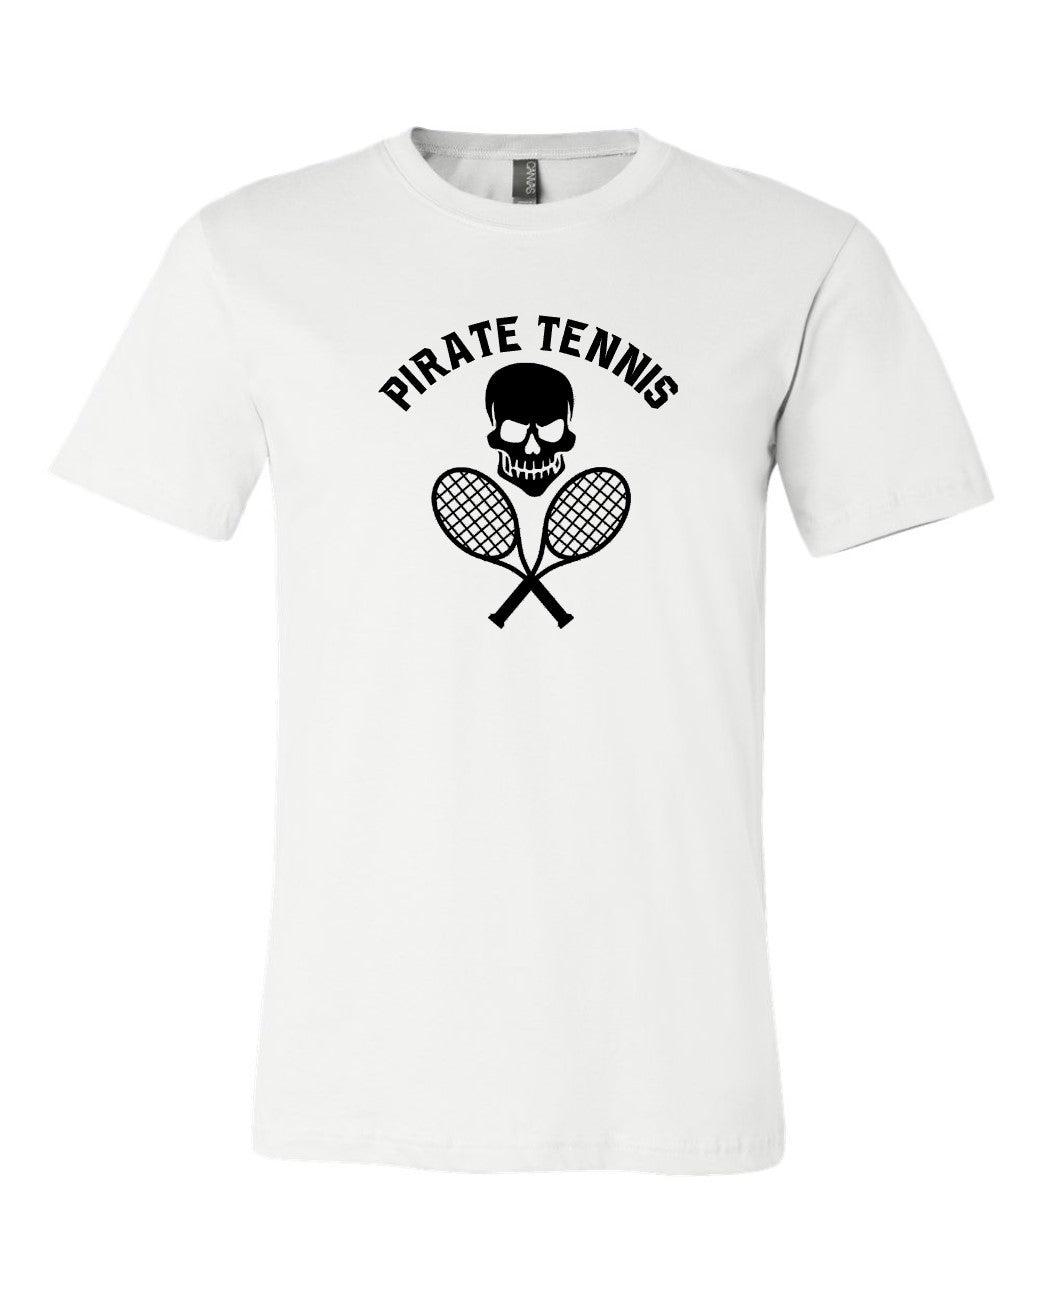 Pirate Tennis Premium Tee